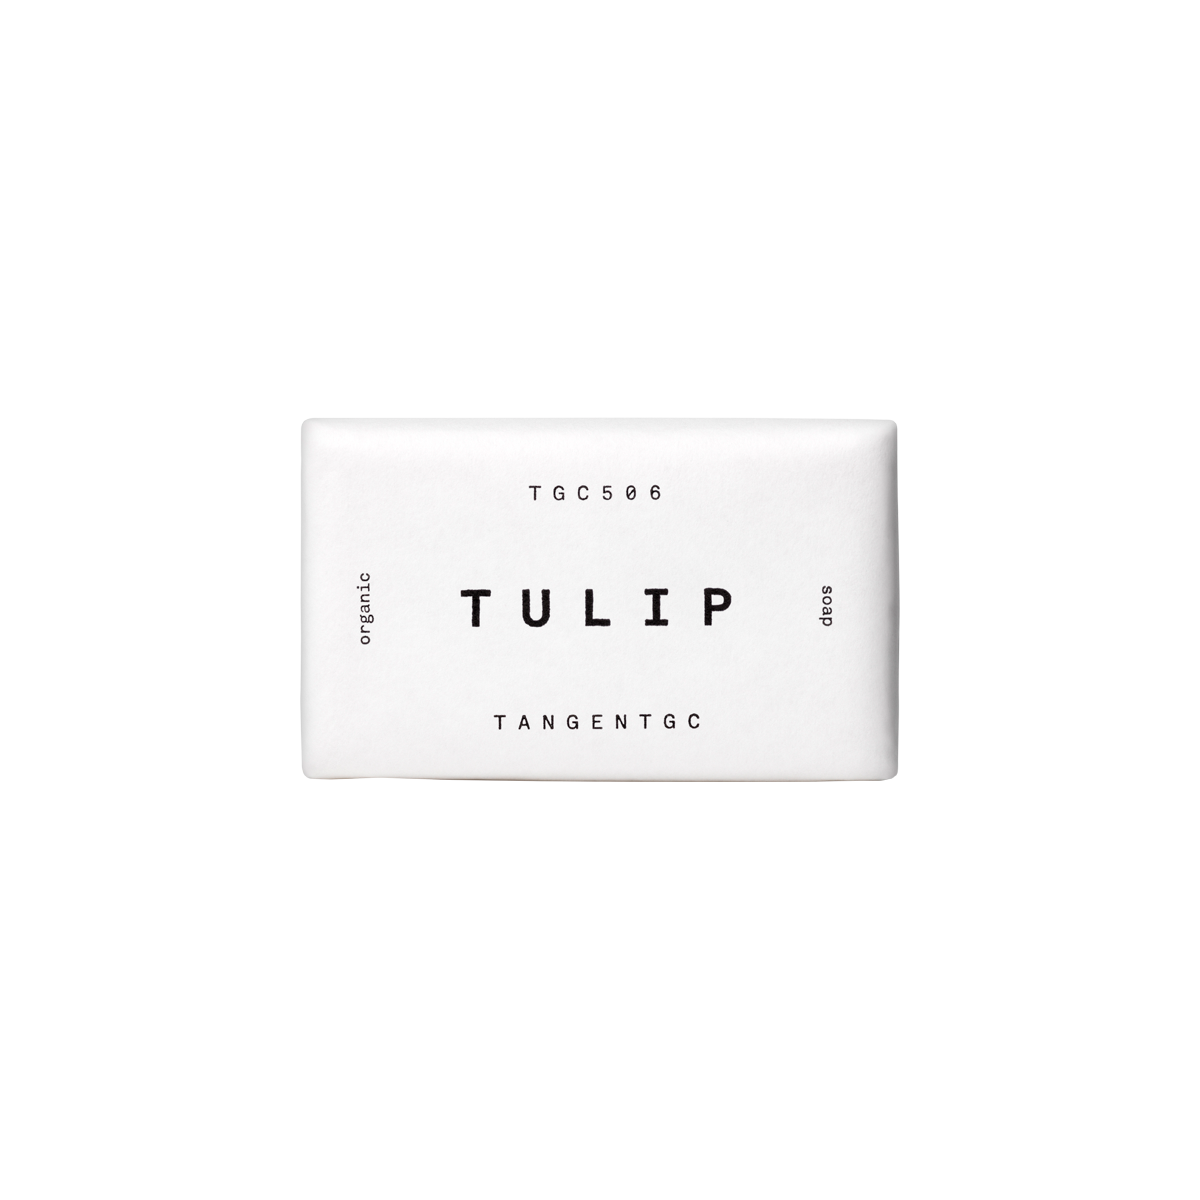 Tangent GC - Tulip Soap Bar